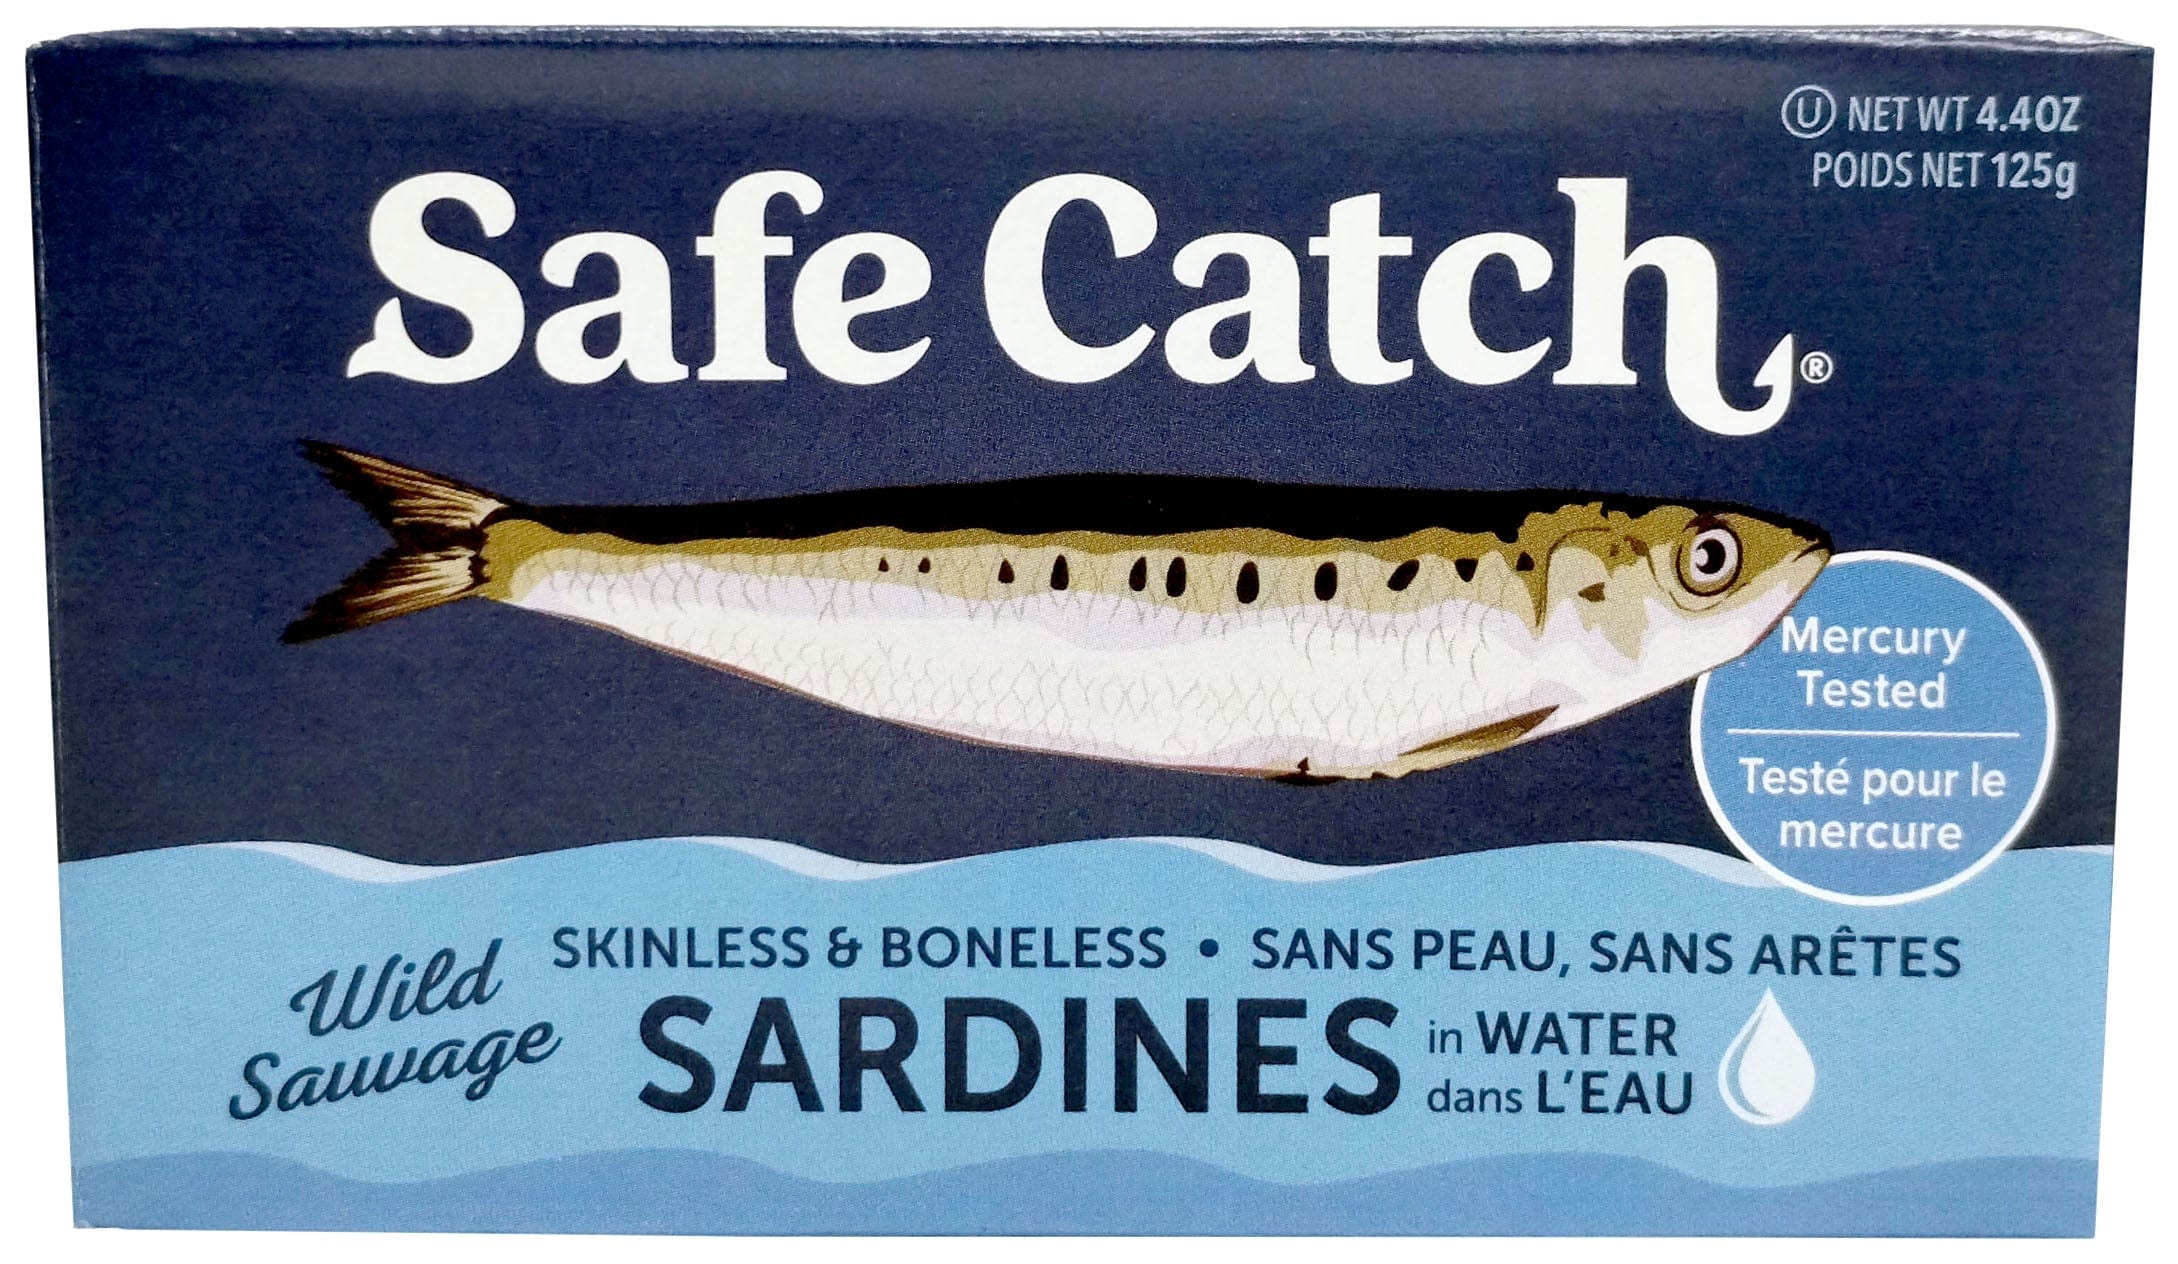 SAFE AND CATCH Épicerie Sardines sauvages sans peau, sans arêtes dans l'eau 125g